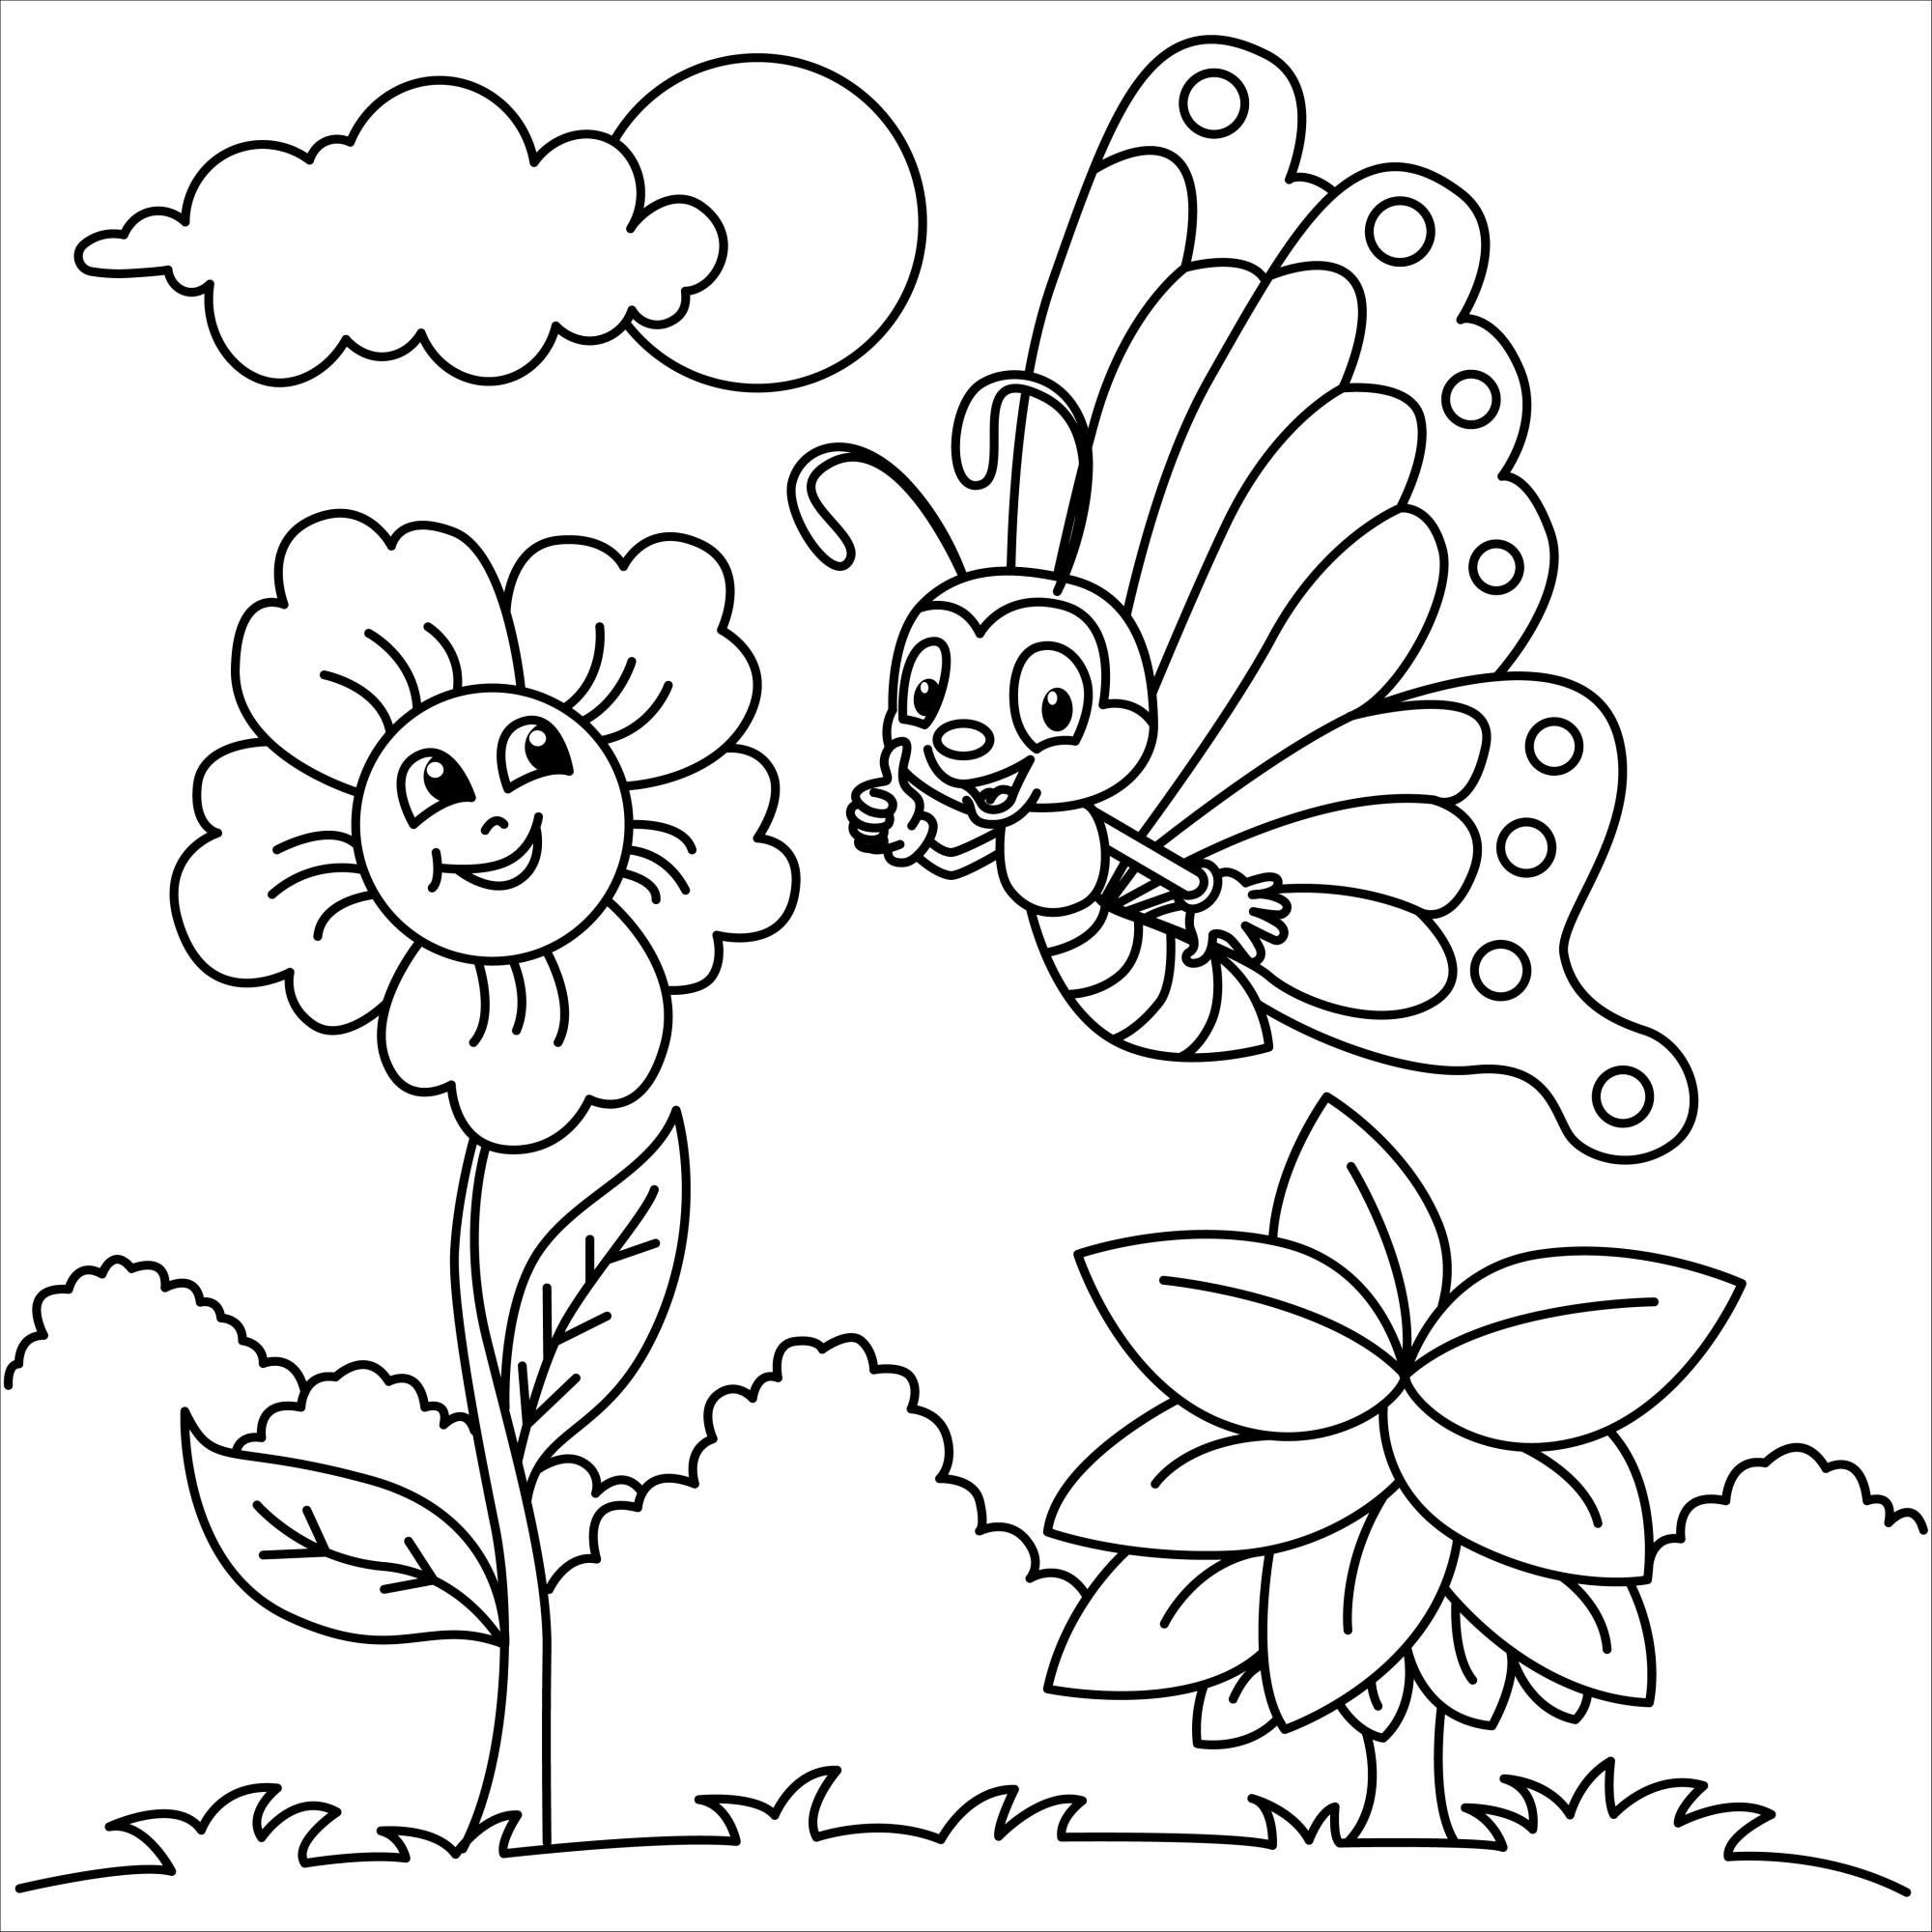 Раскраска для детей: смешная бабочка и подсолнух в поле